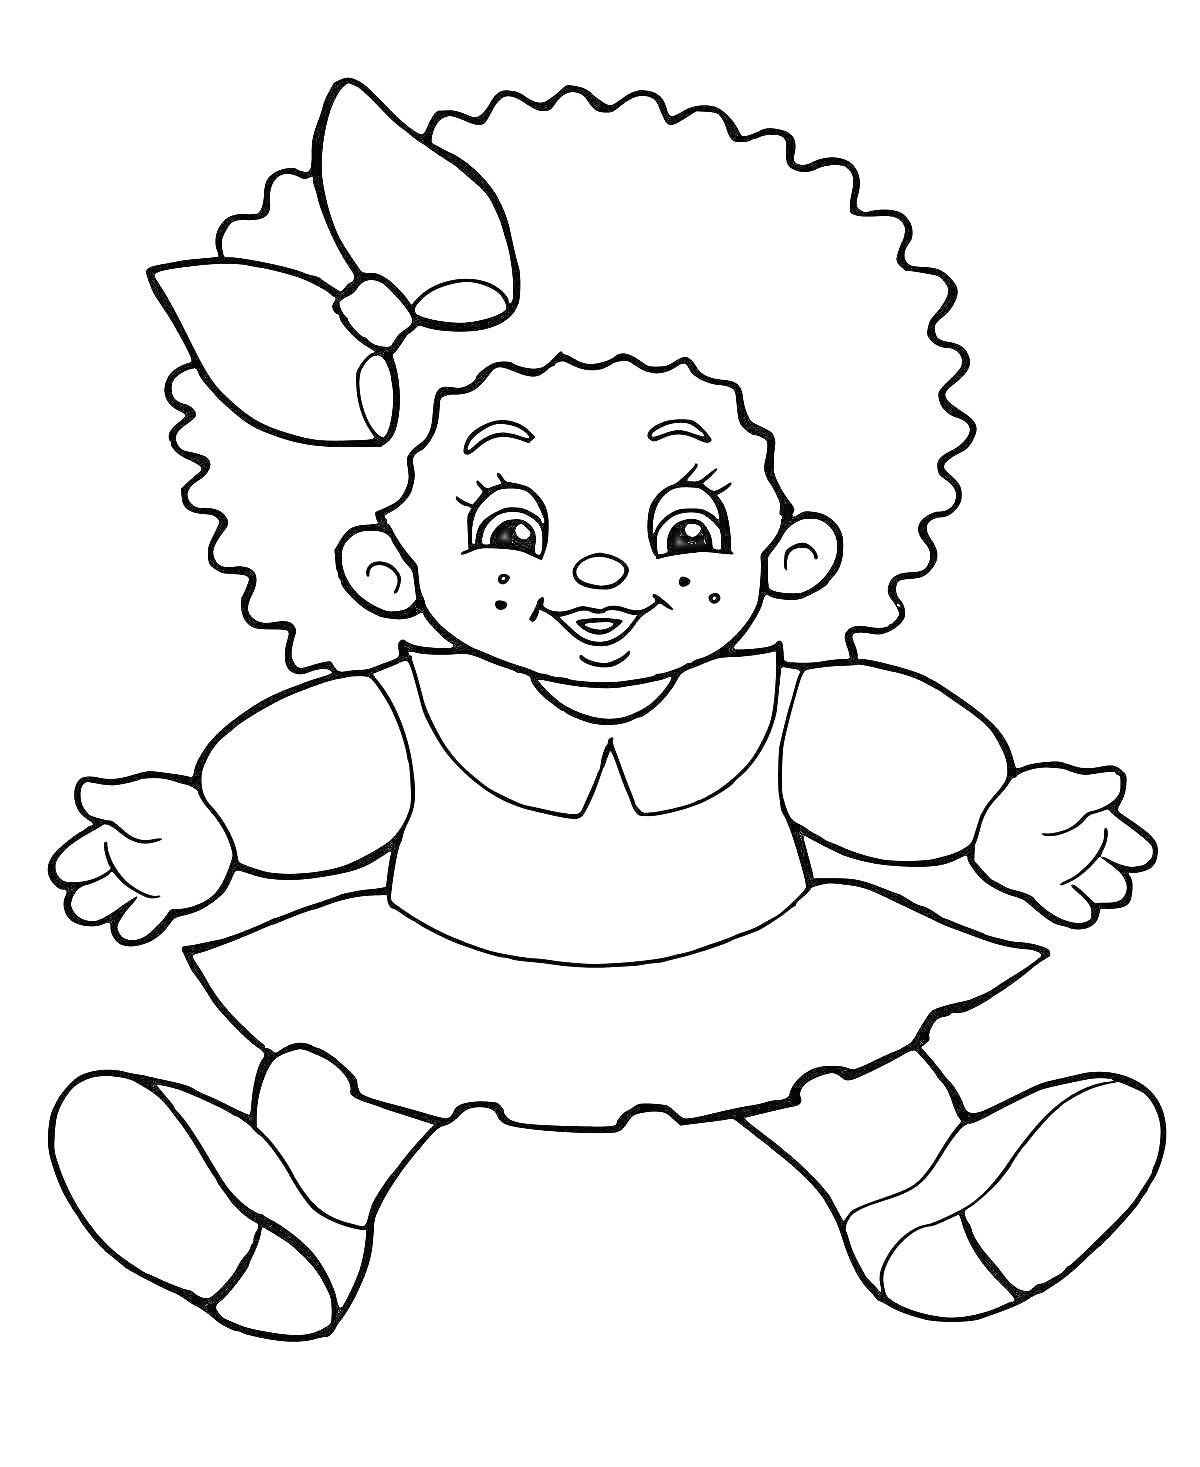 Раскраска Куколка с кудрявыми волосами, в платье и большим бантом на голове